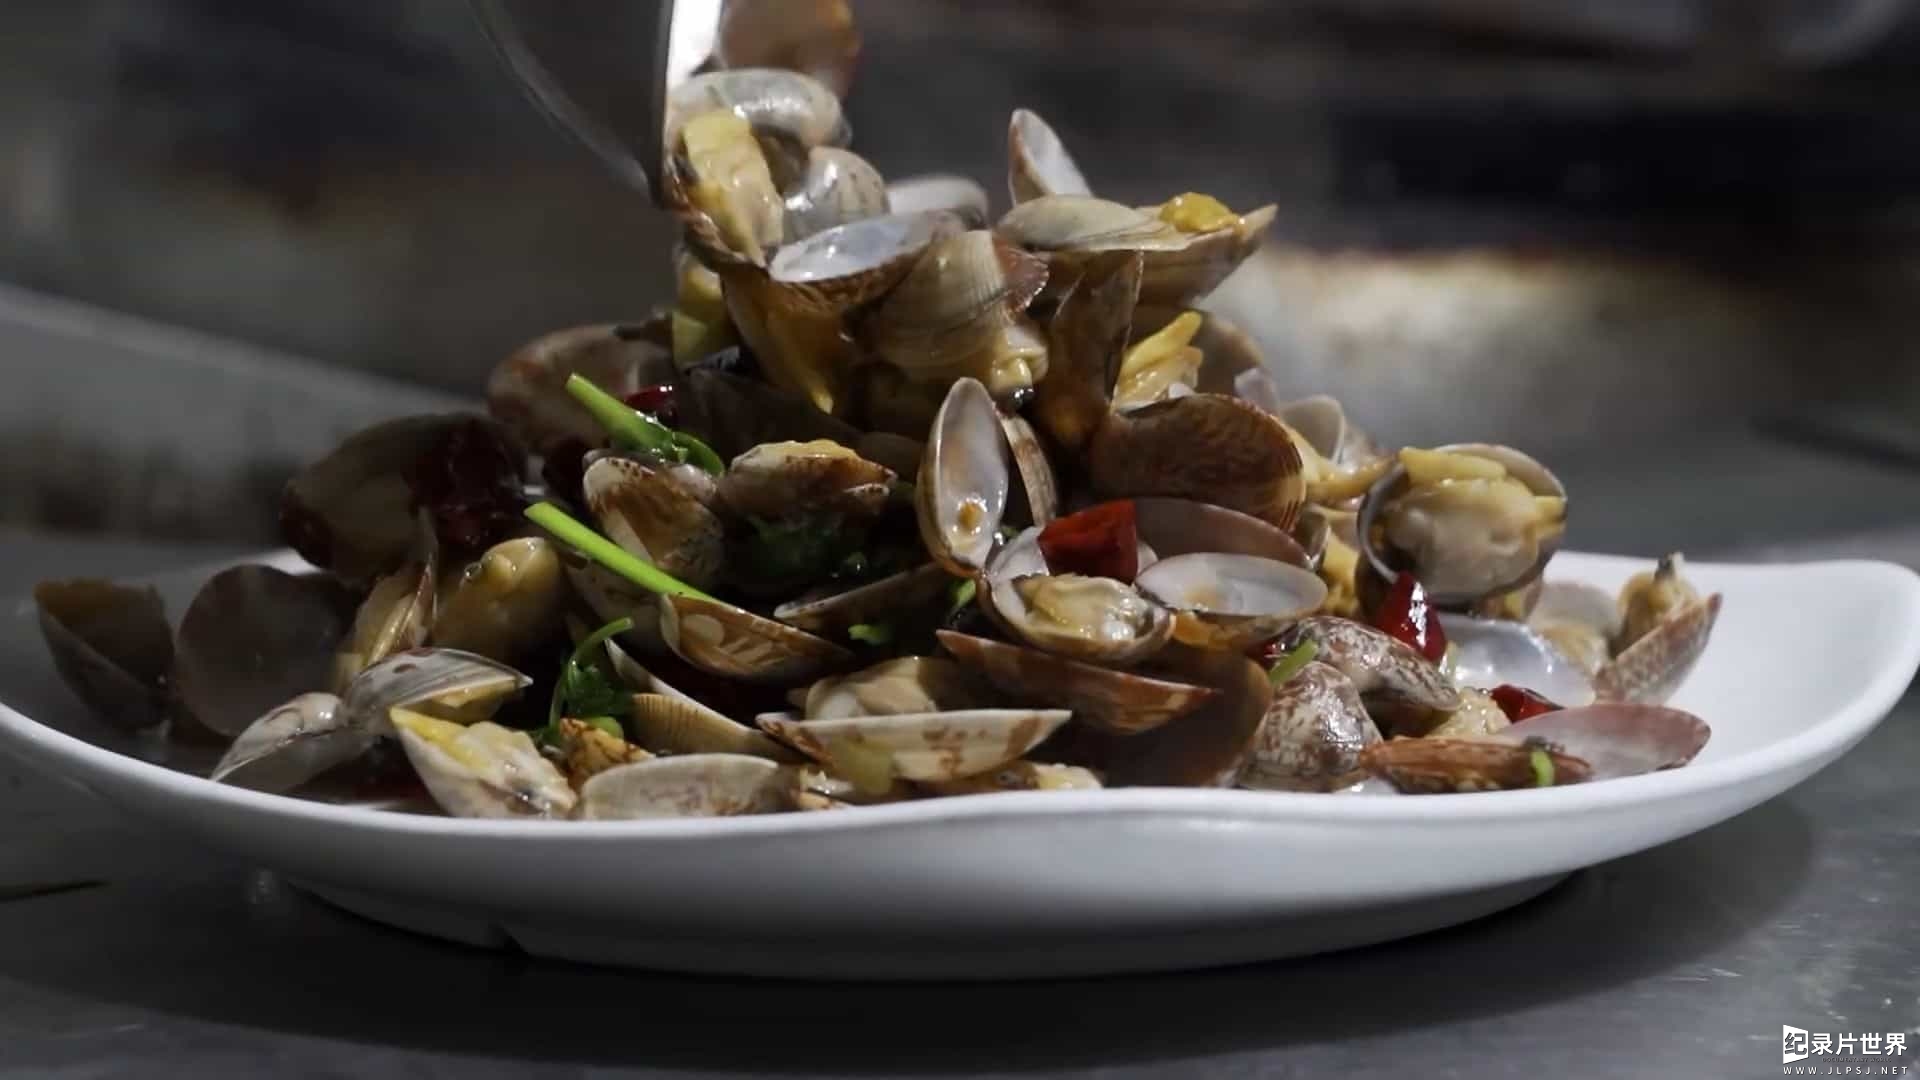 国产纪录片/中国美食系列/ 海鲜极致美味《大海小鲜 2021》全4集 